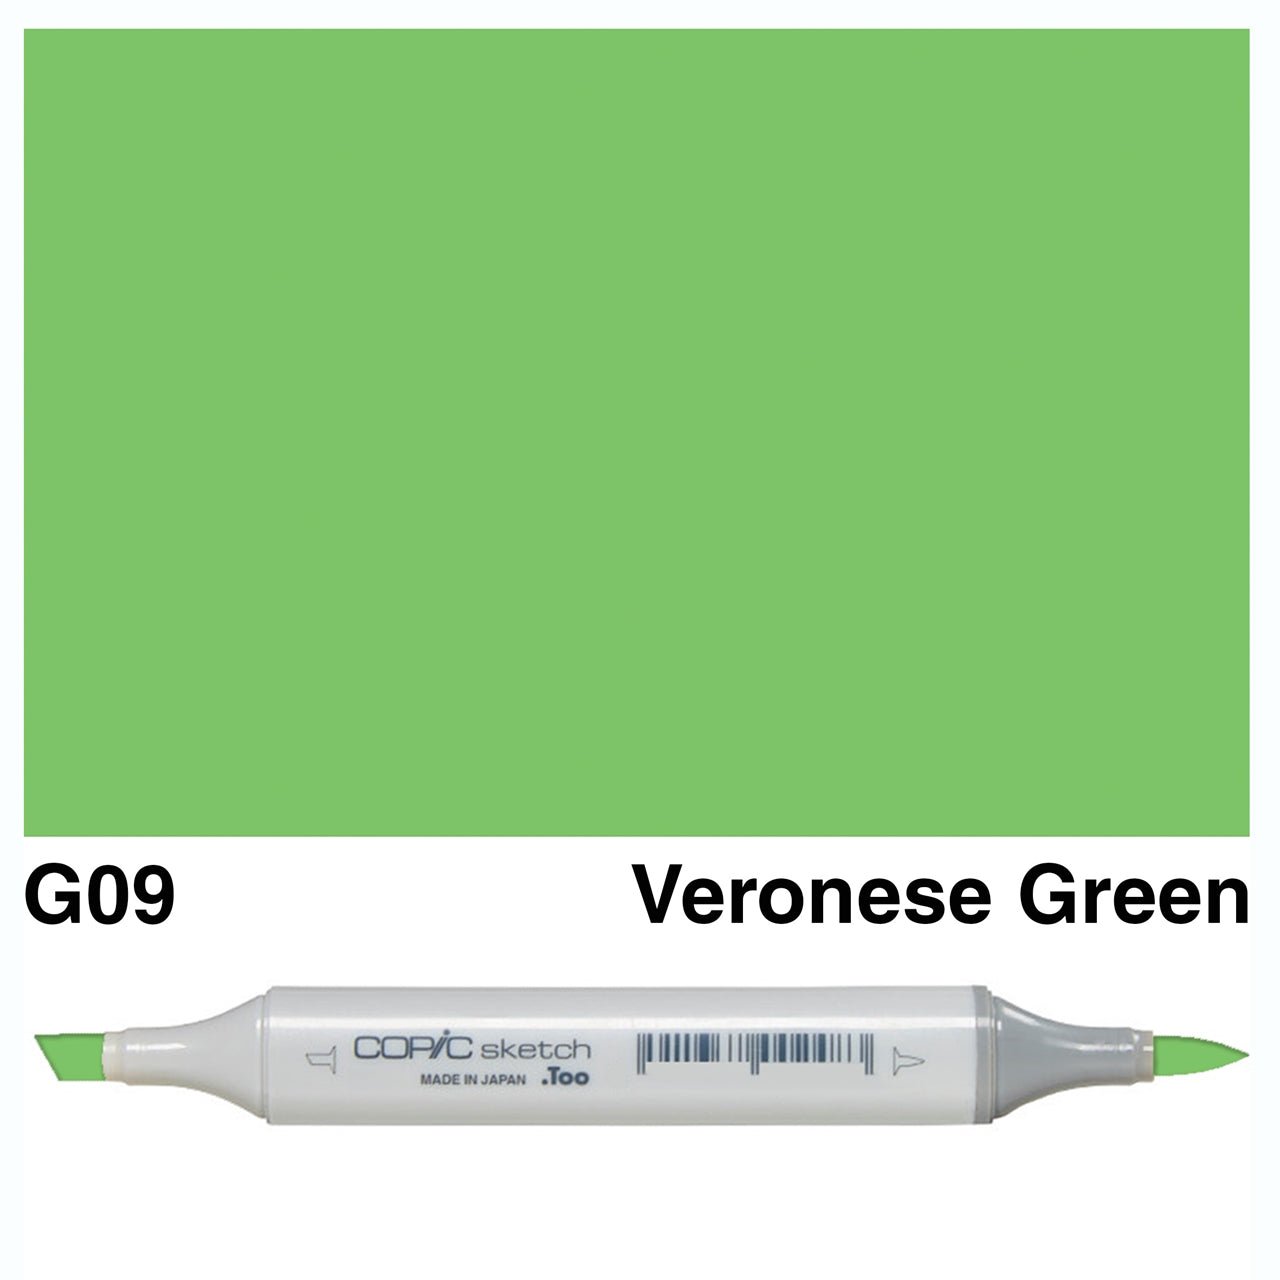 Copic Sketch G09 Veronese Green - theartshop.com.au